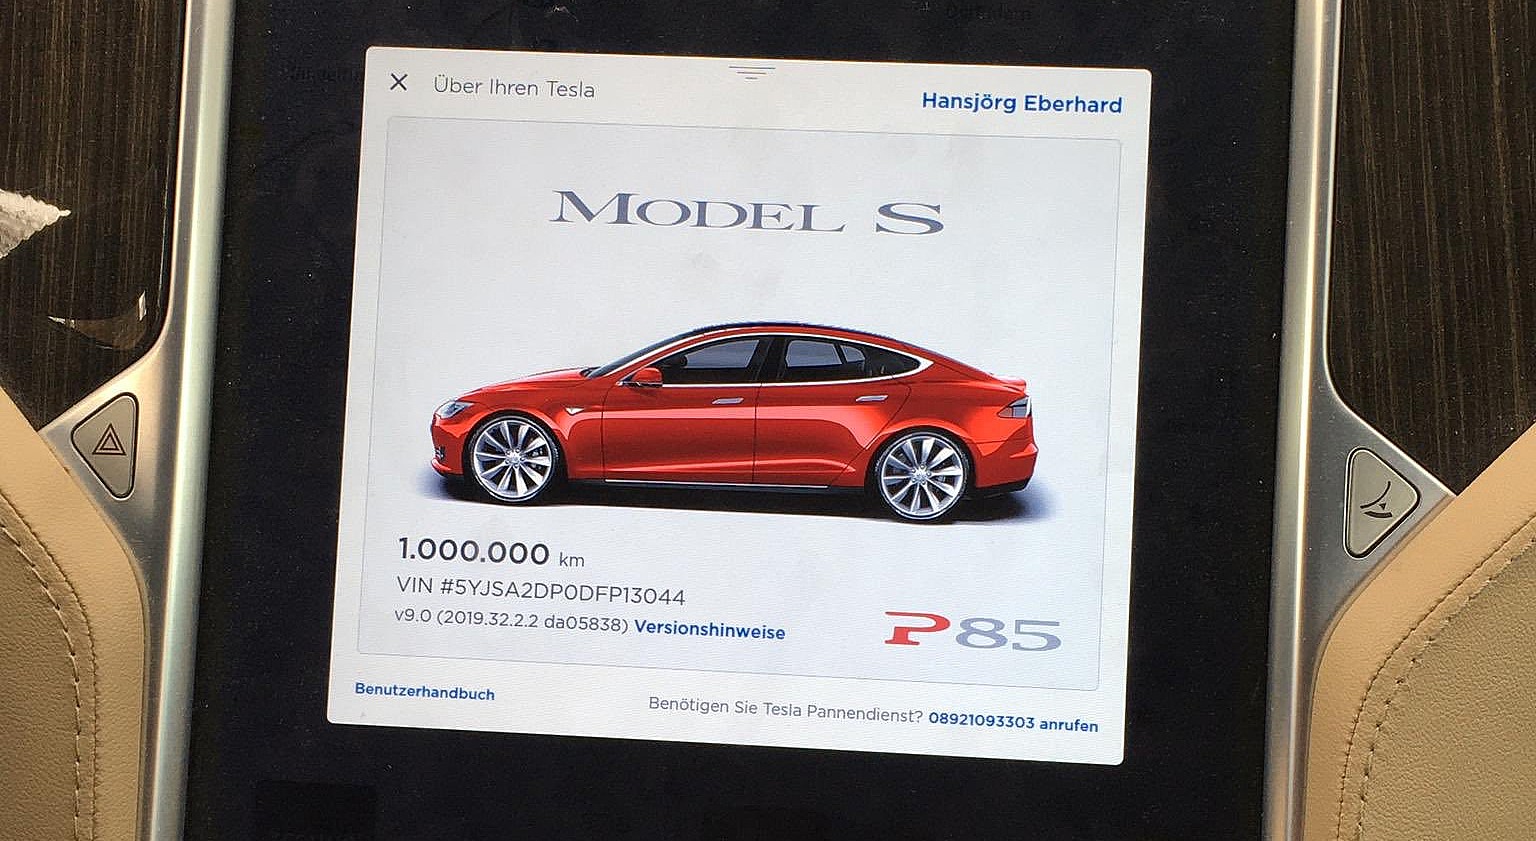 Tesla Model S reaches 1 million km milestone in historic 5-year-run